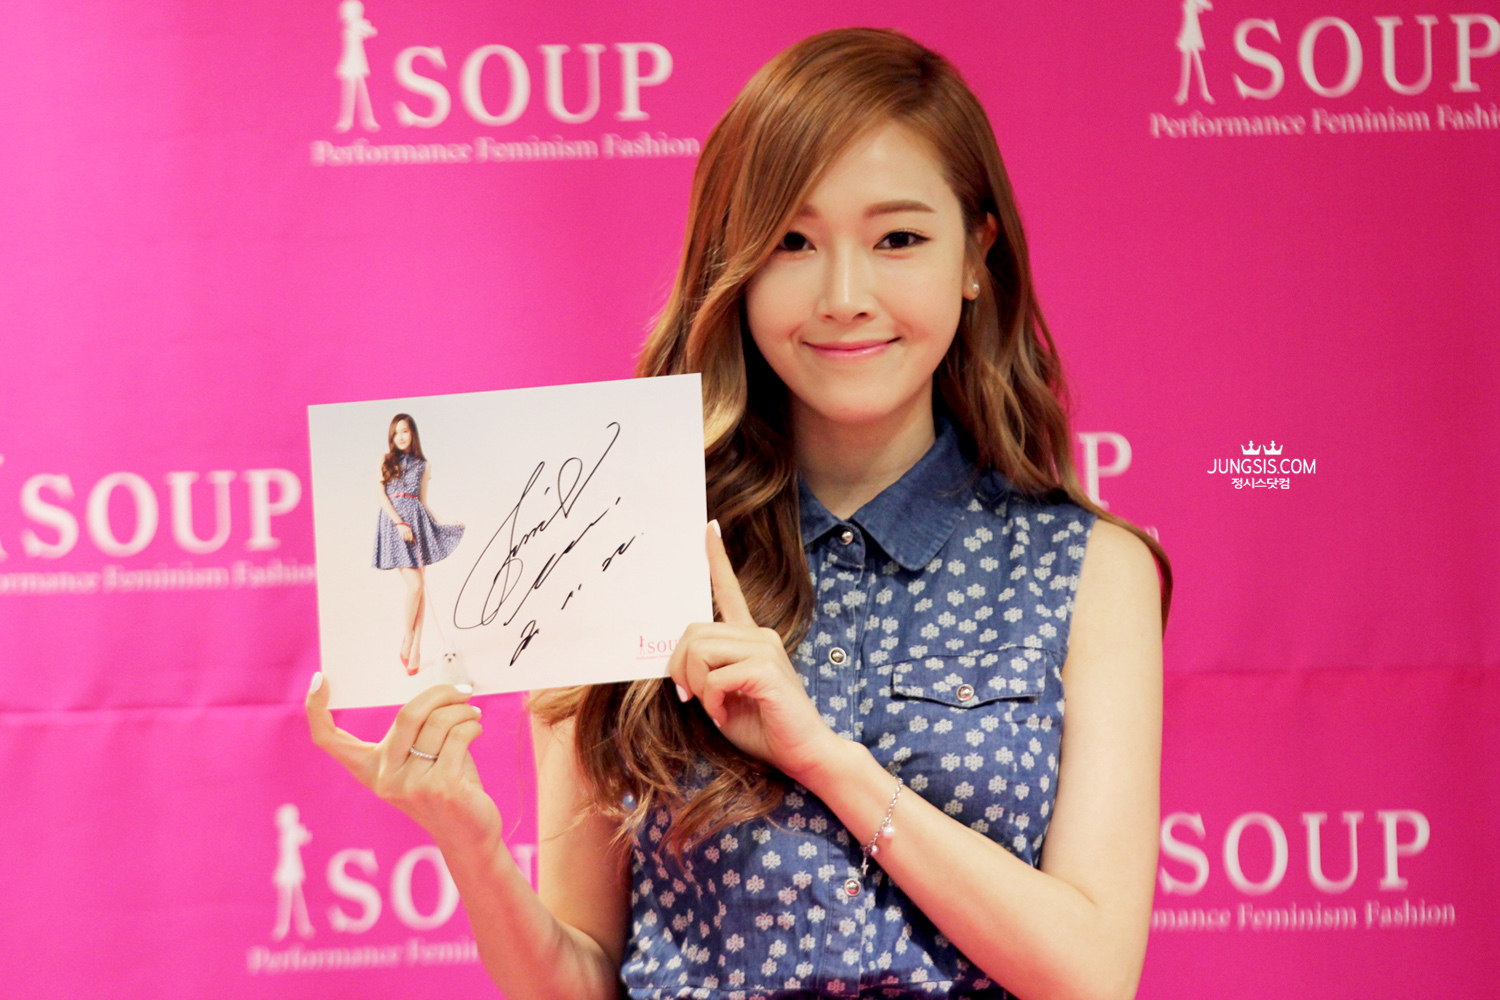 [PIC][04-04-2014]Jessica tham dự buổi fansign cho thương hiệu "SOUP" vào trưa nay - Page 3 21105F4153A449C733F35D